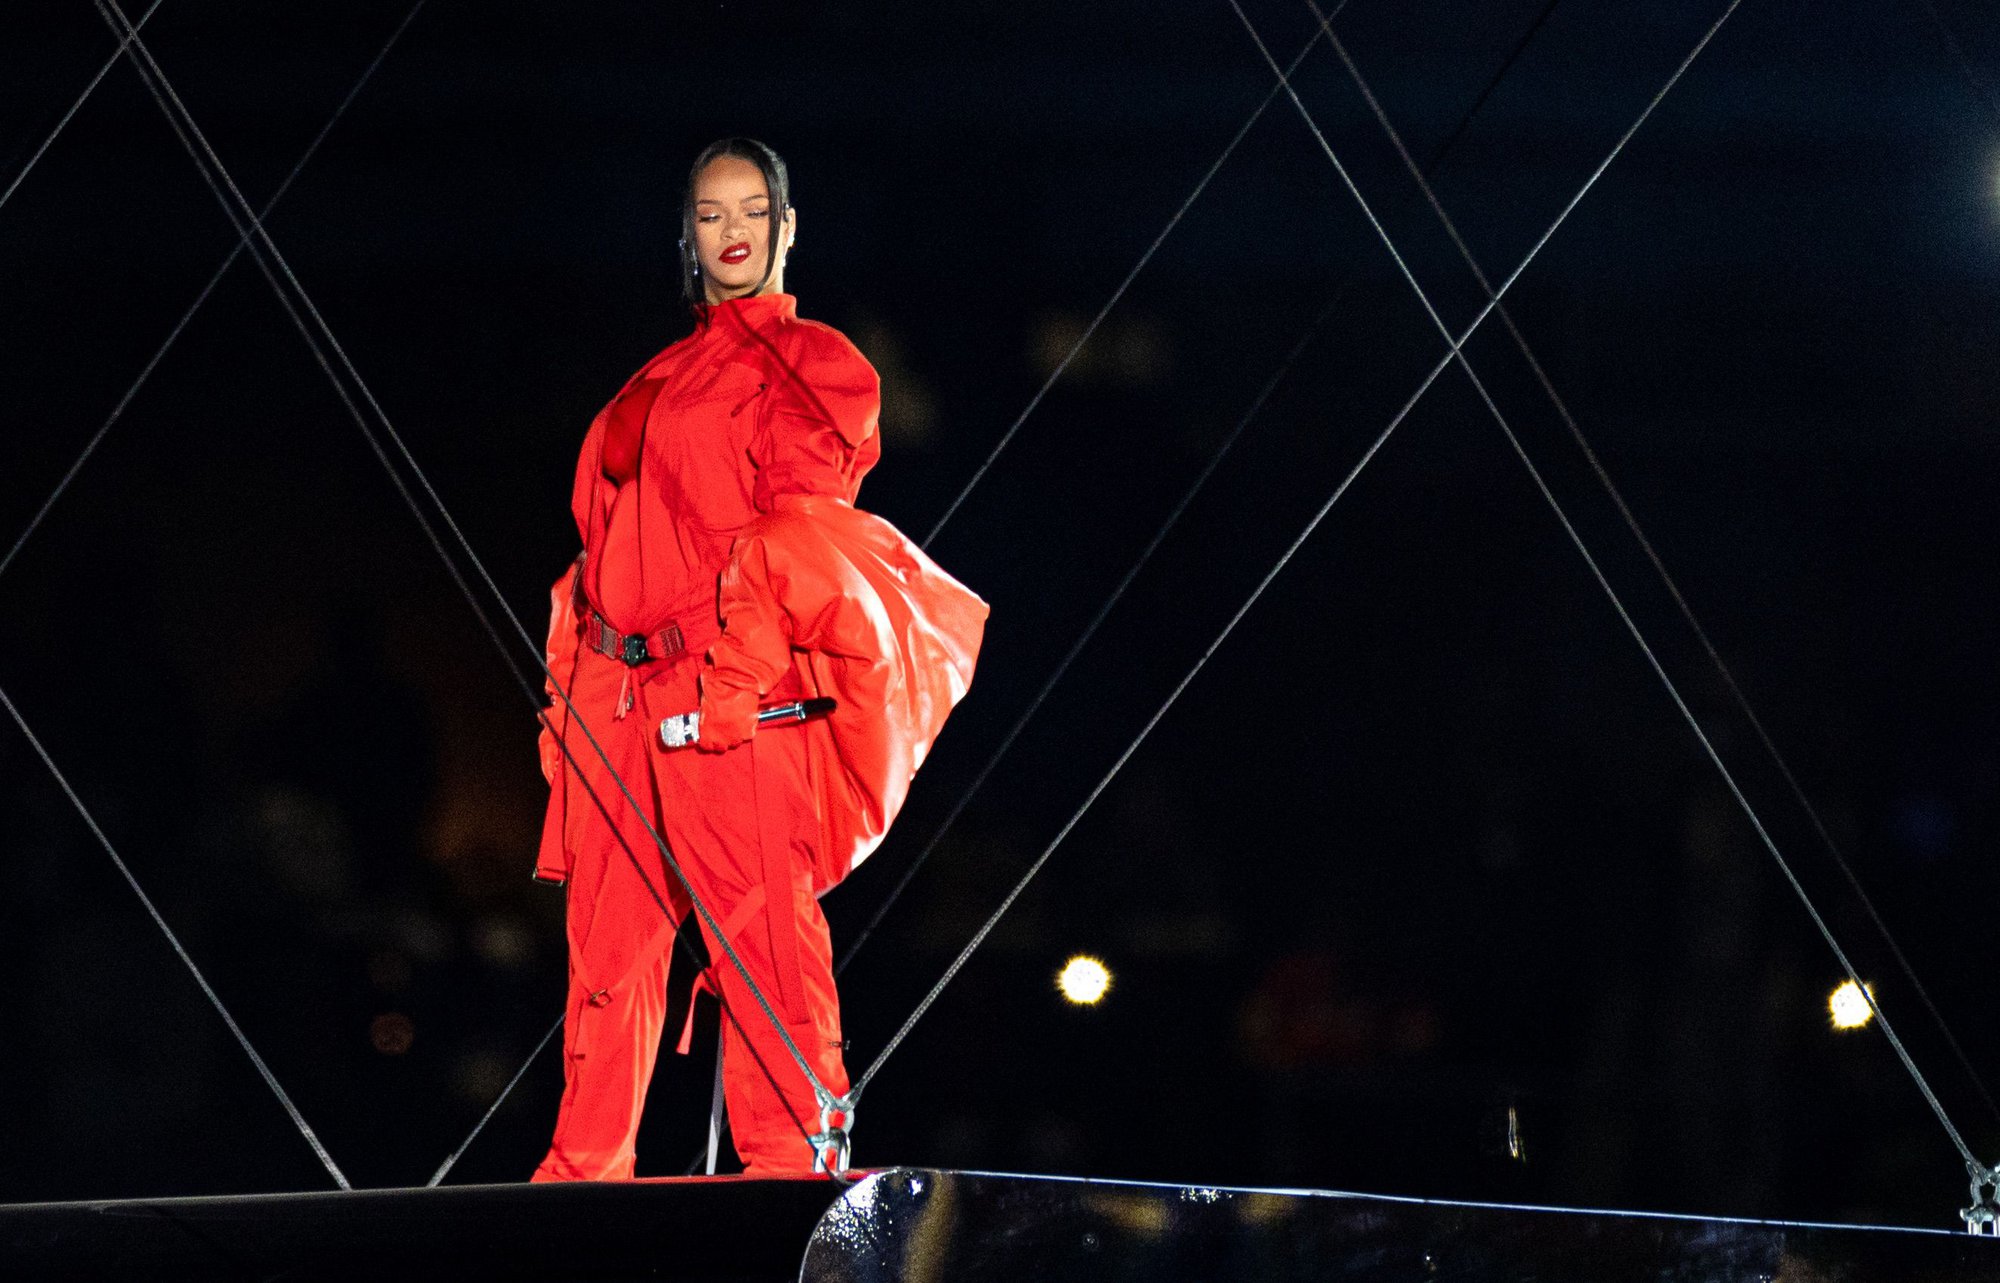 Siêu sân khấu của Rihanna tại Super Bowl chỉ được dựng trong 5 phút, xem clip hậu trường mà choáng! - Ảnh 2.